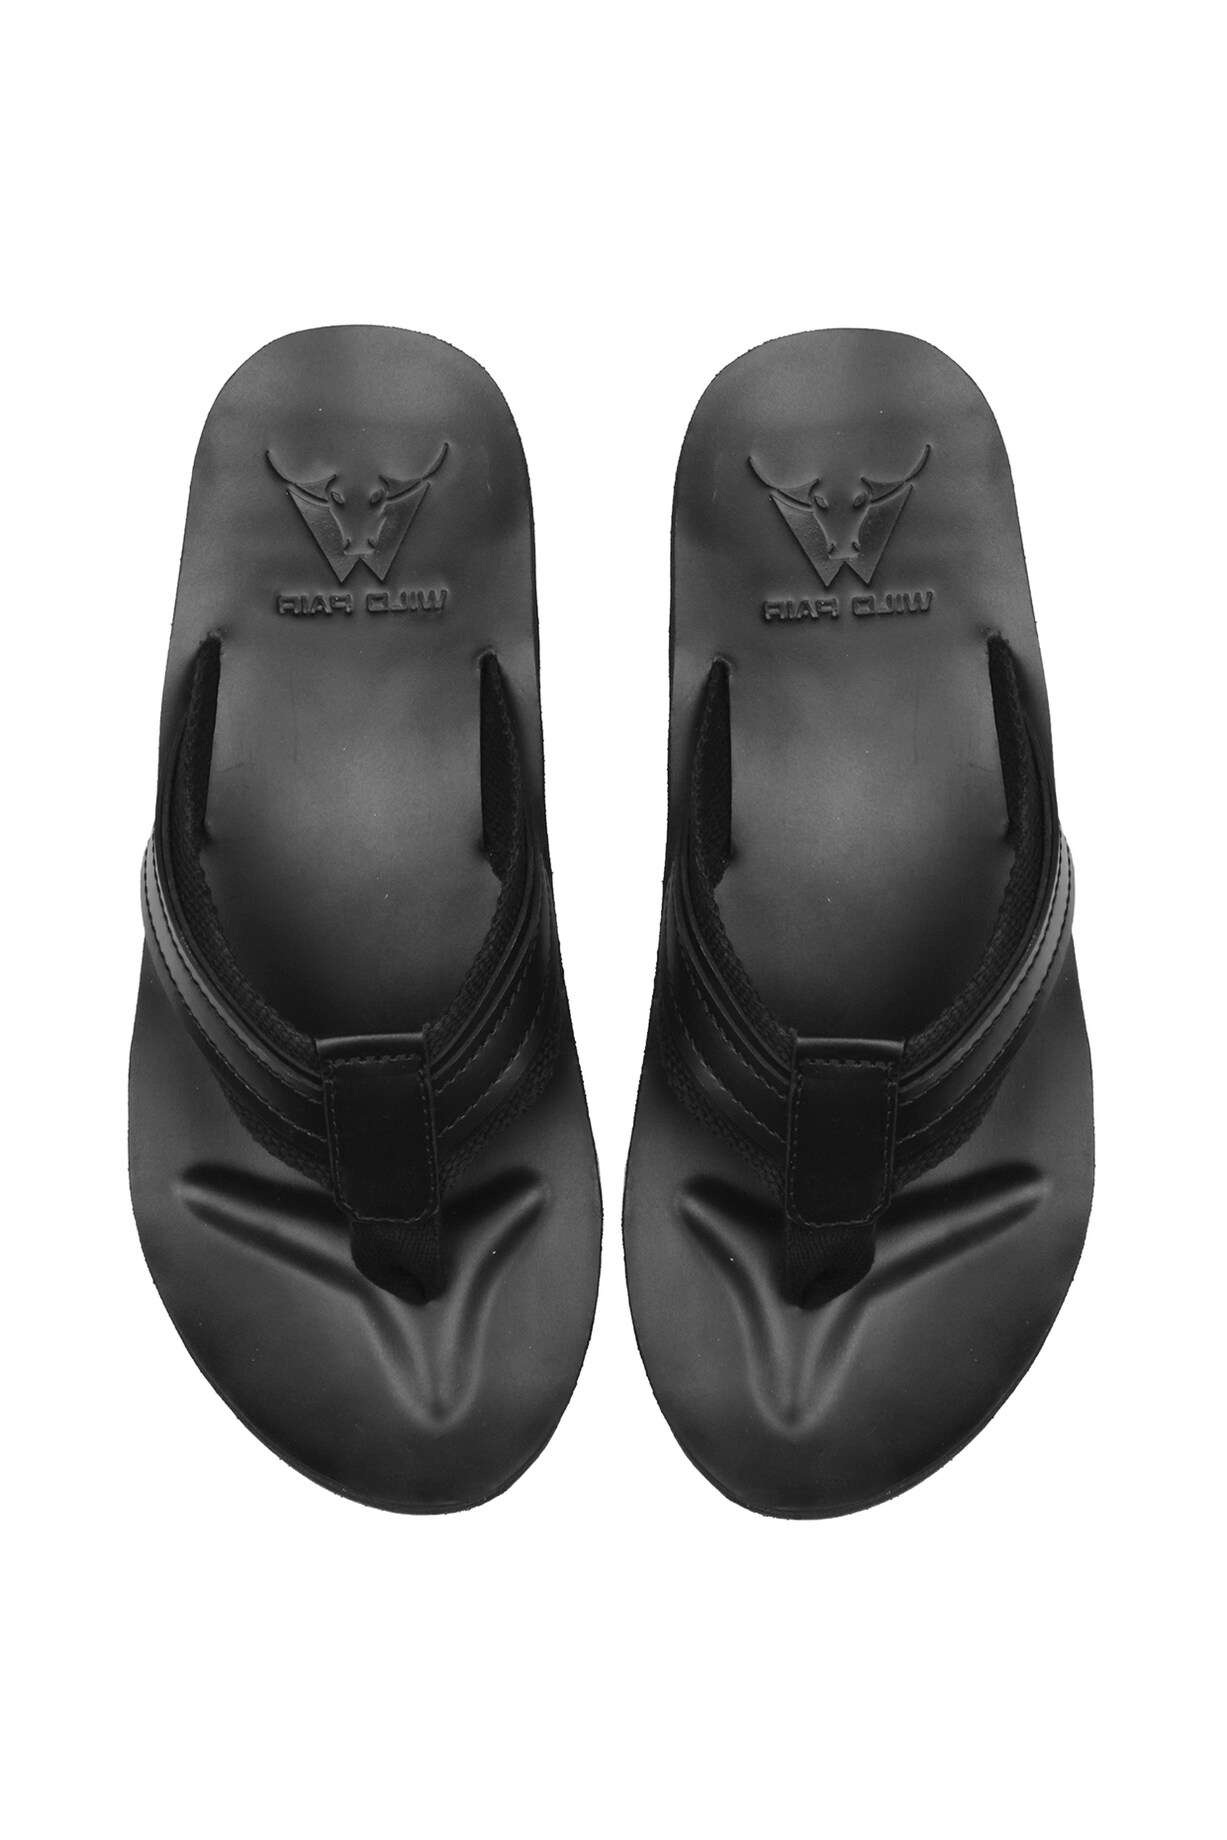 Black Leather Flip Flops by WILDPAIR